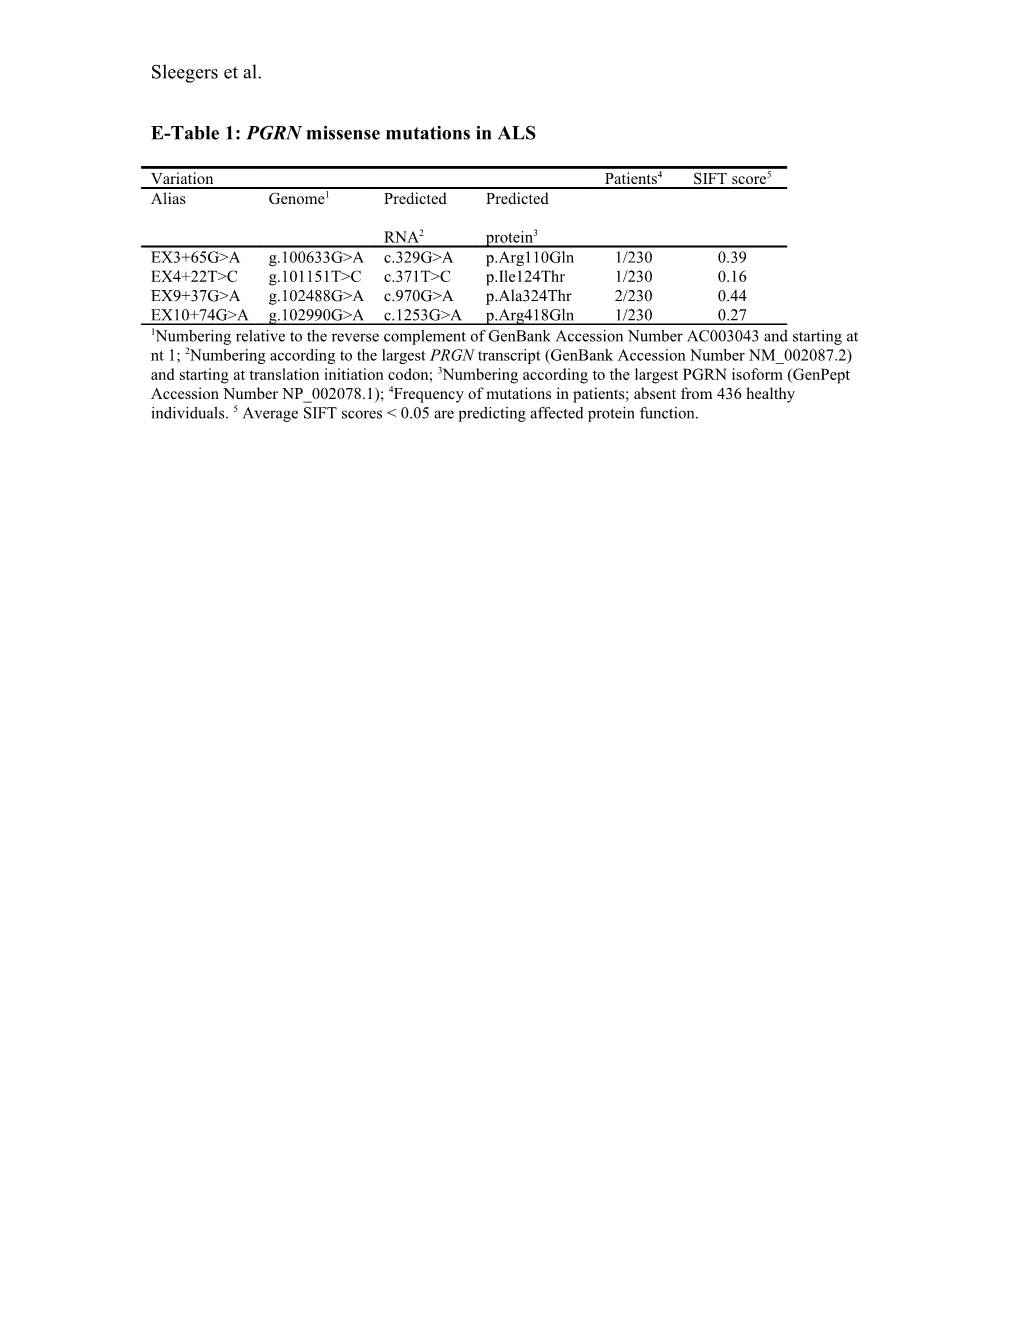 E-Table 1: Genetic Variants in the PGRN 5 Regulatory Region